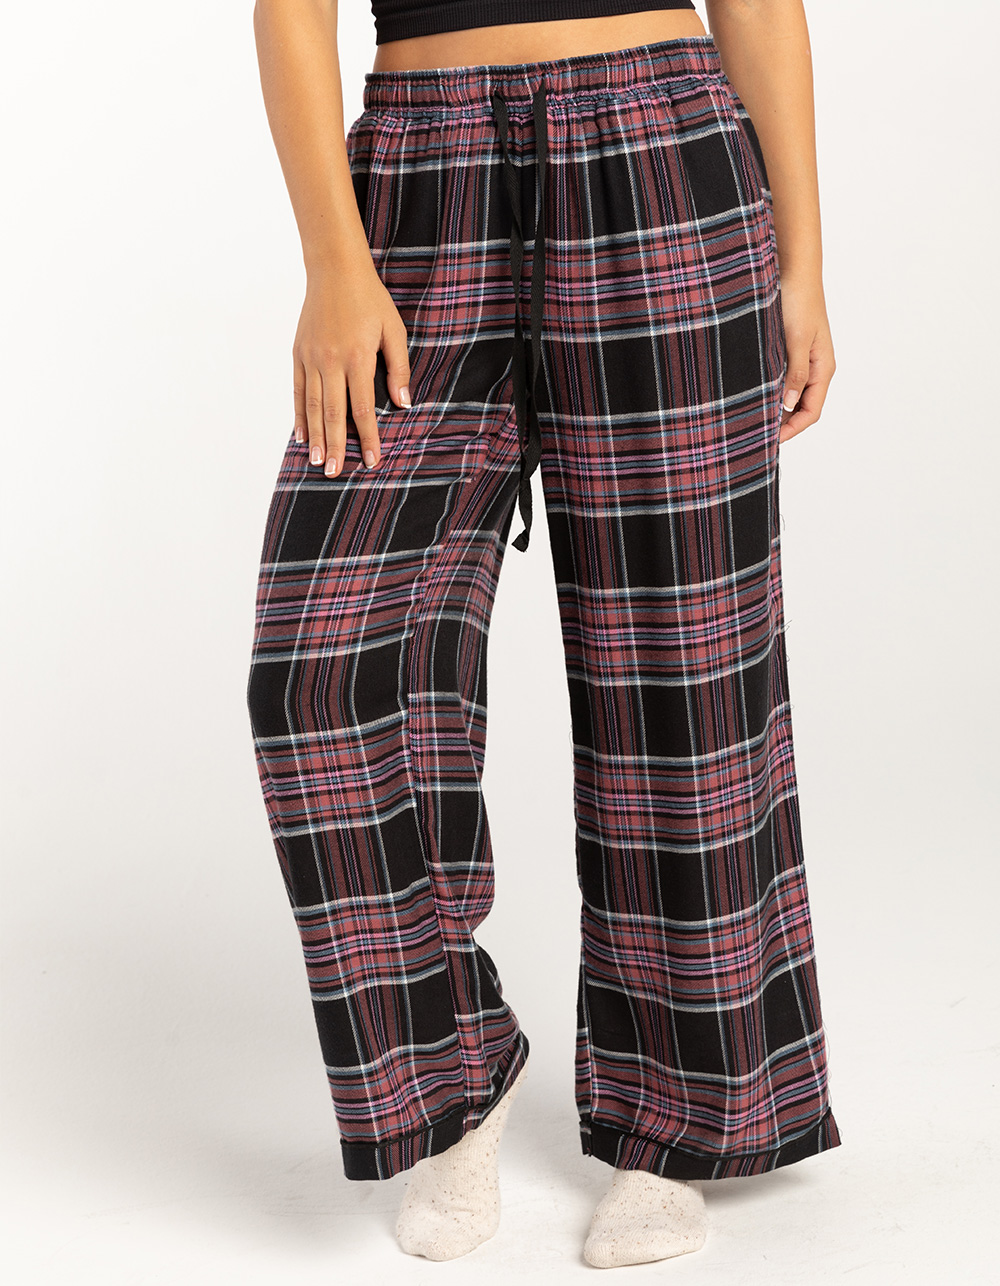 FULL TILT Plaid Womens Pajama Pants - BLACK COMBO